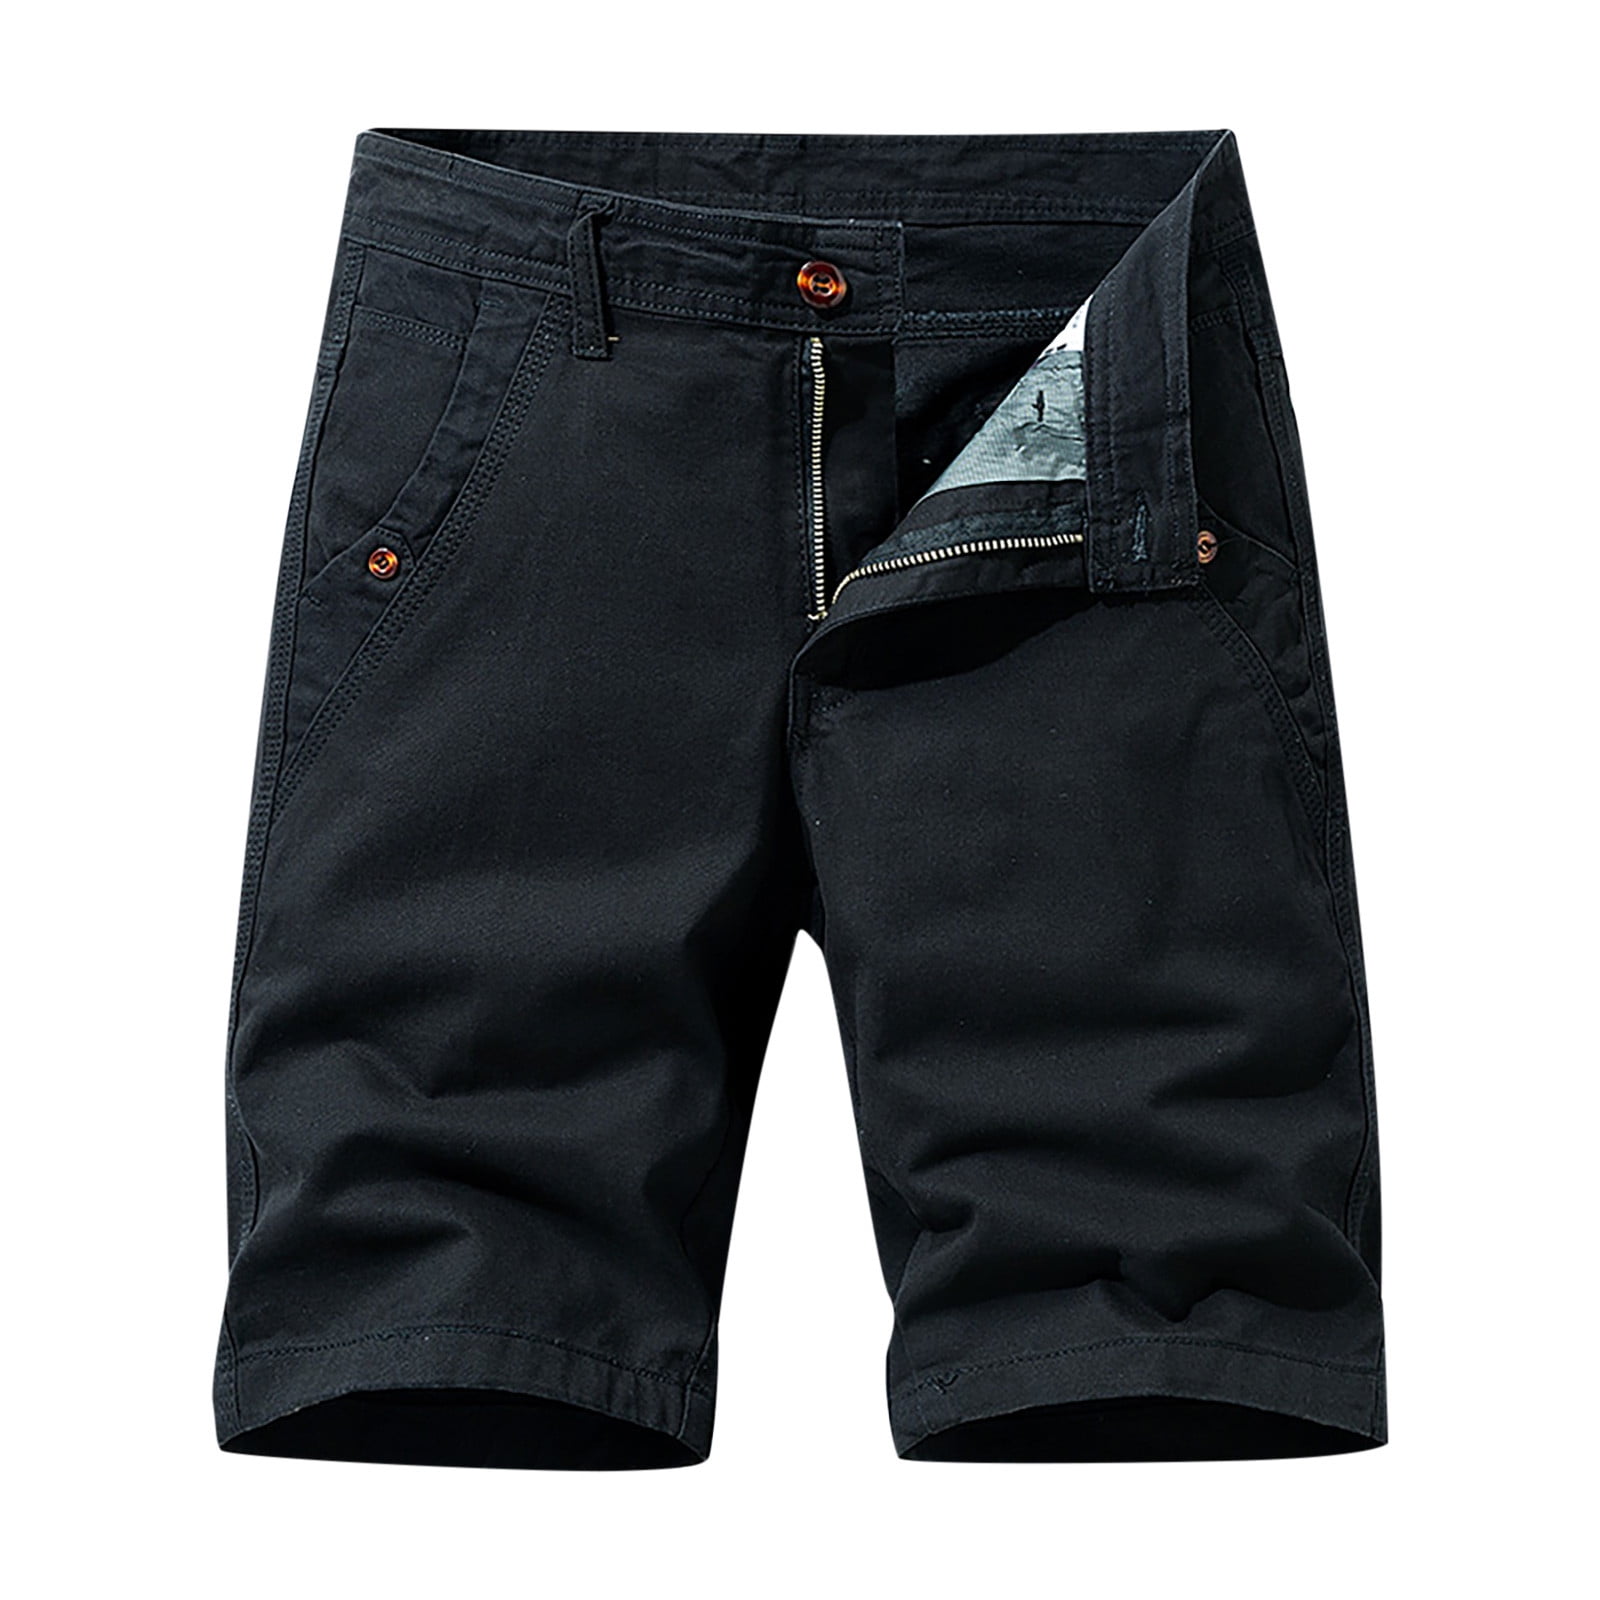 VSSSJ Cargo Shorts for Men Regular Fit Zipper Buttons Elastic Waist ...